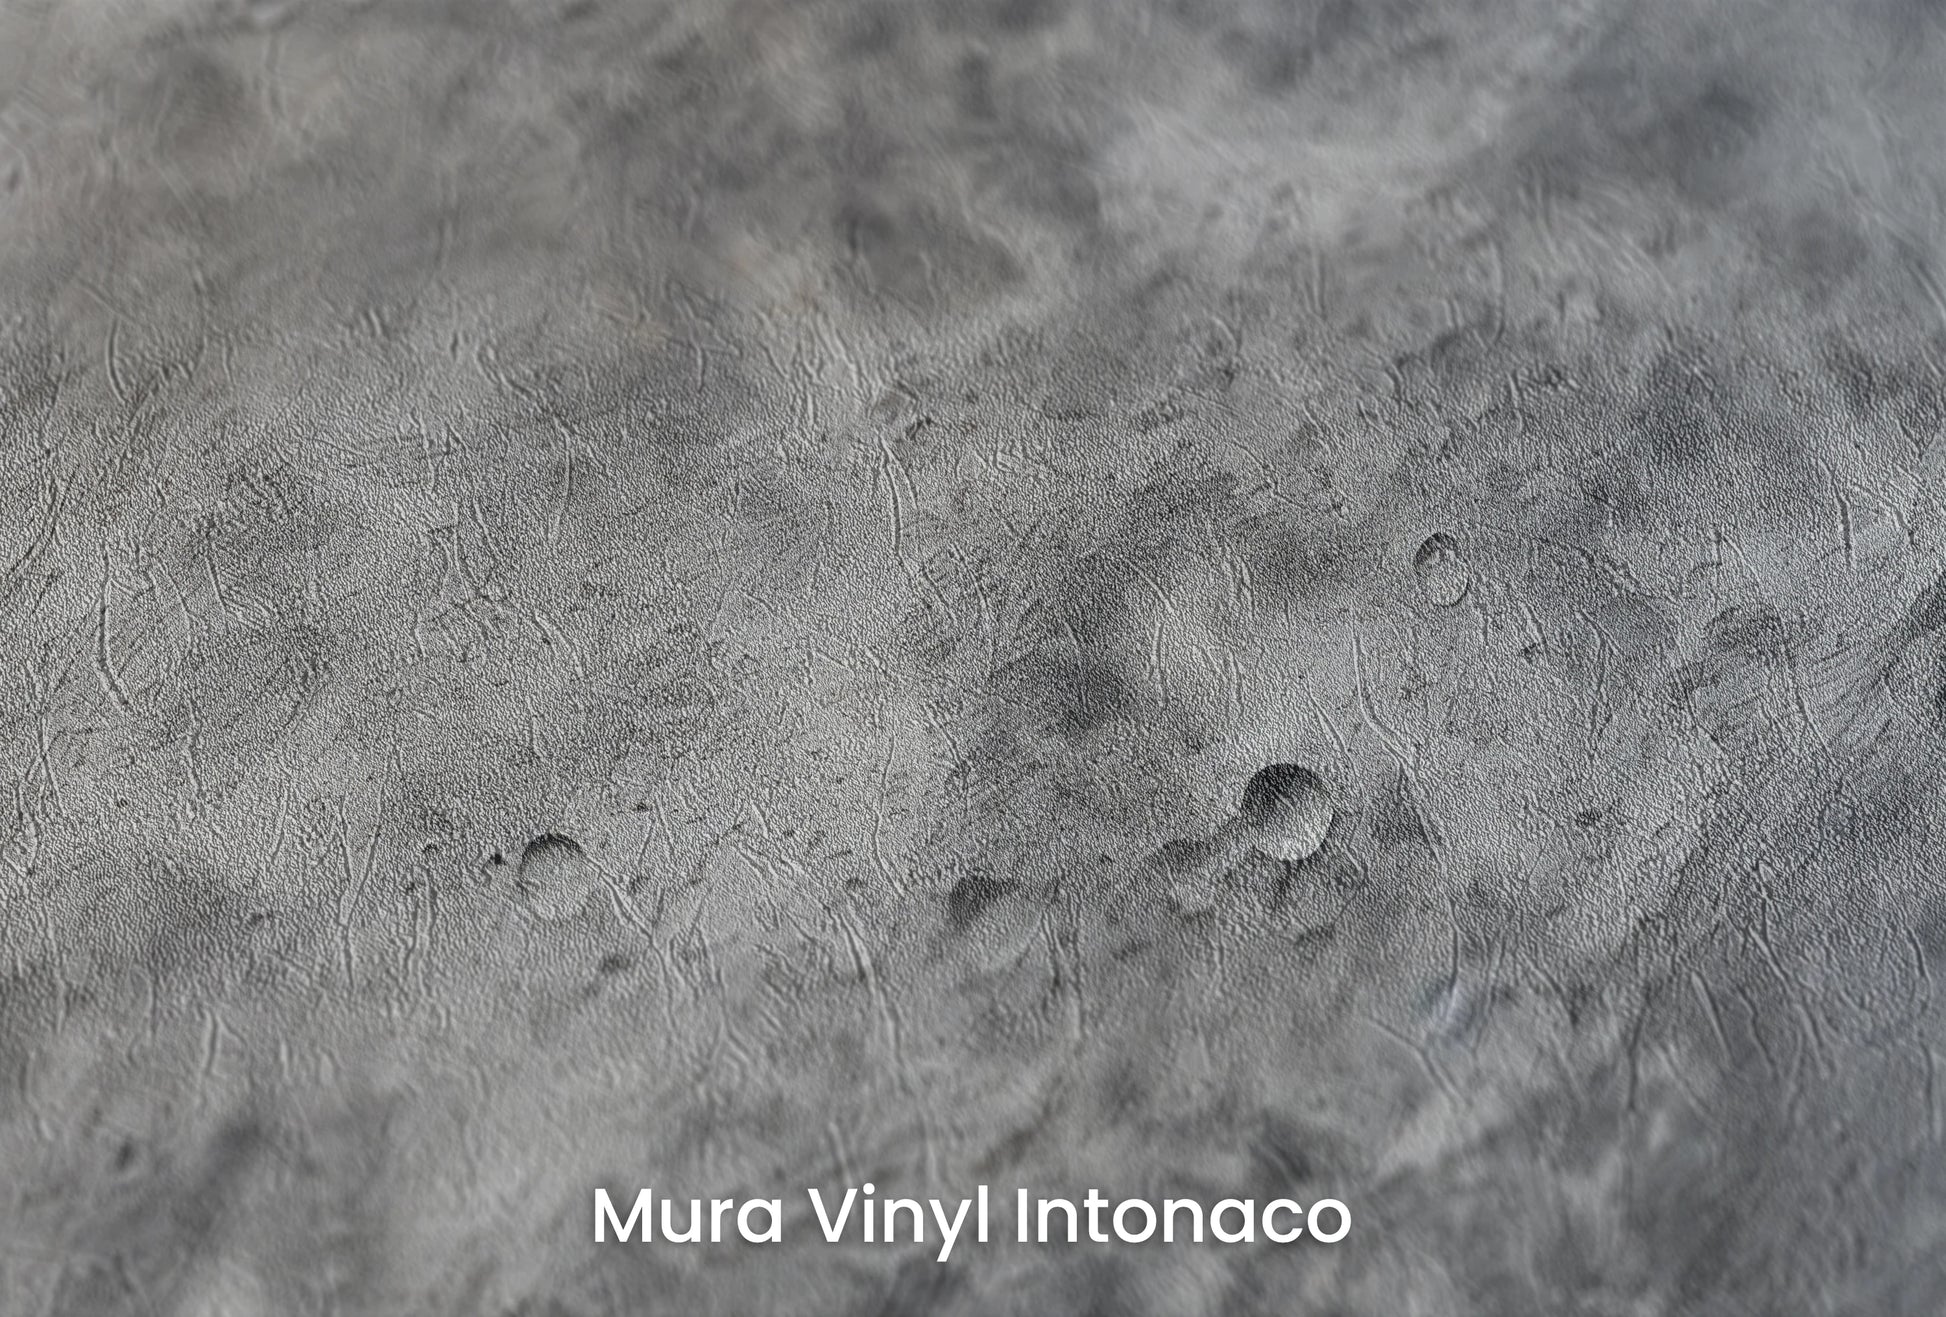 Zbliżenie na artystyczną fototapetę o nazwie Moon's Tranquility #2 na podłożu Mura Vinyl Intonaco - struktura tartego tynku.